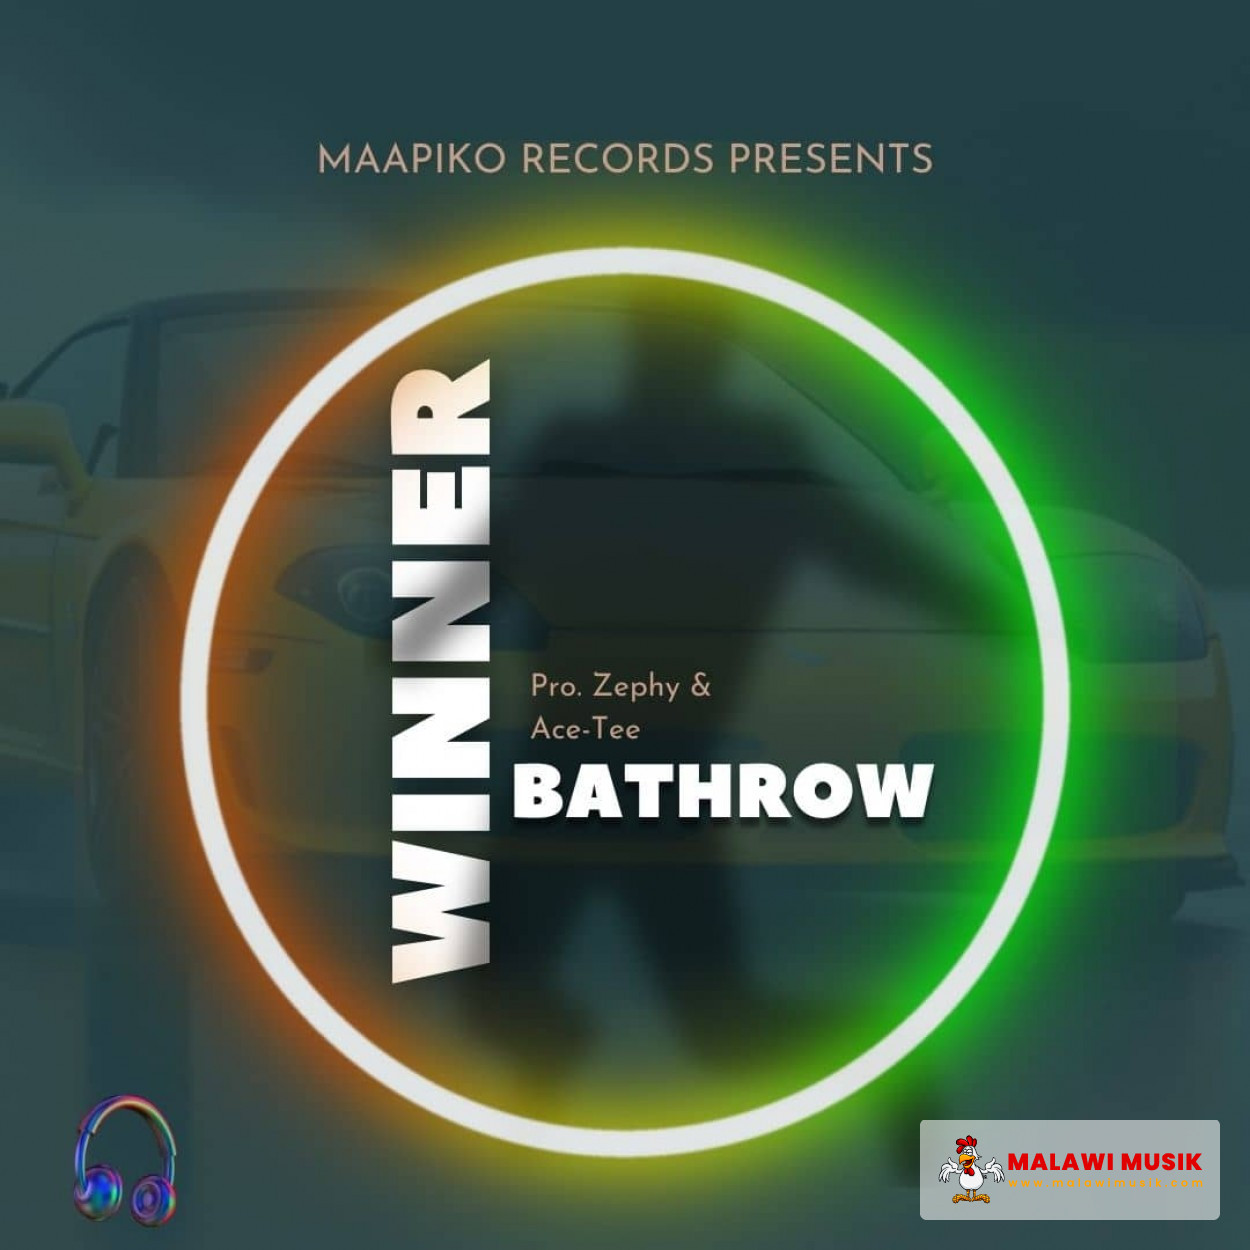 Bathrow-Bathrow - Winner (Prod. Zephy & Ace-Tee)-song artwork cover